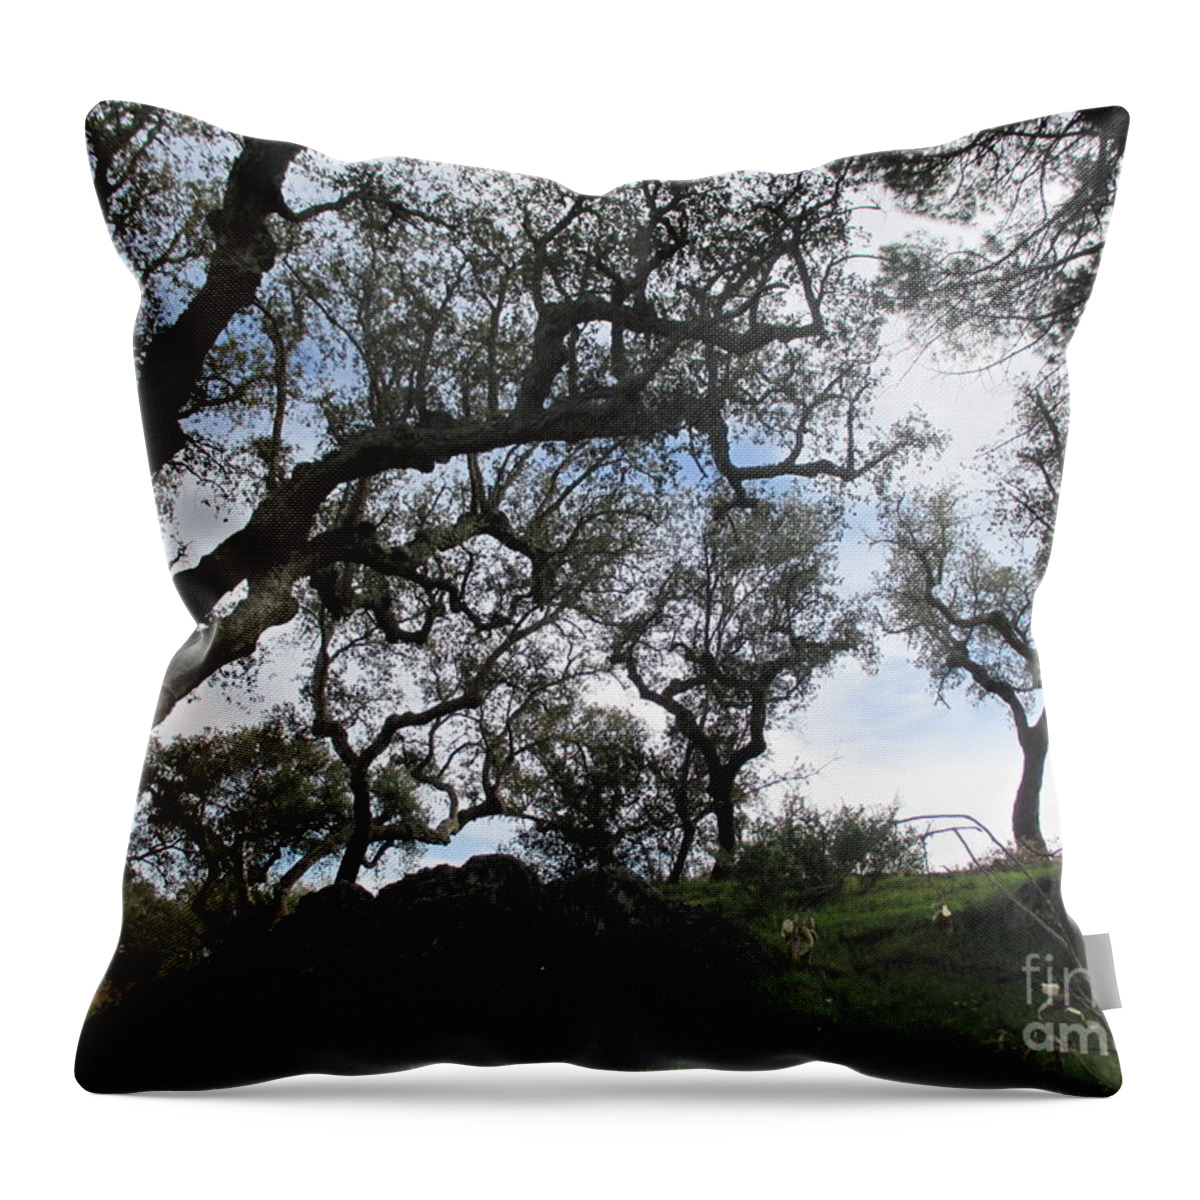 Oak Throw Pillow featuring the photograph Cork Oaks #2 by Chani Demuijlder